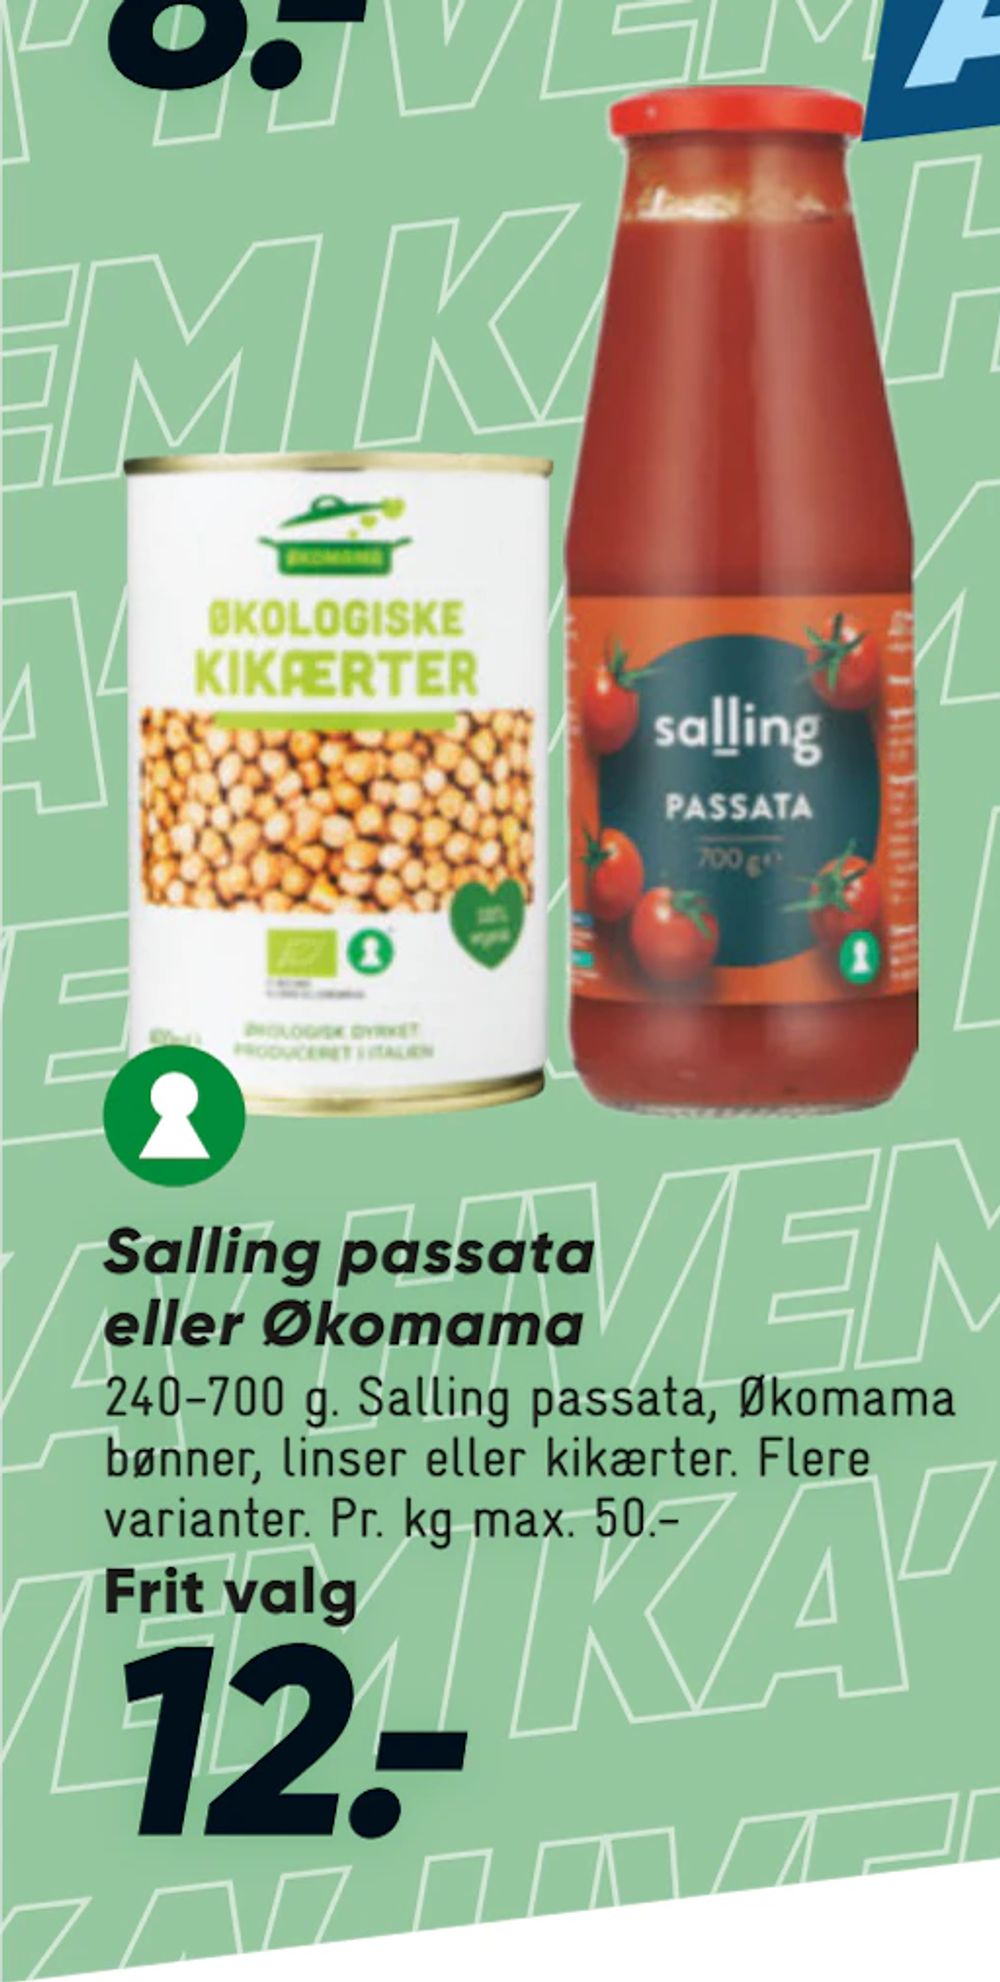 Tilbud på Salling passata eller Økomama fra Bilka til 12 kr.